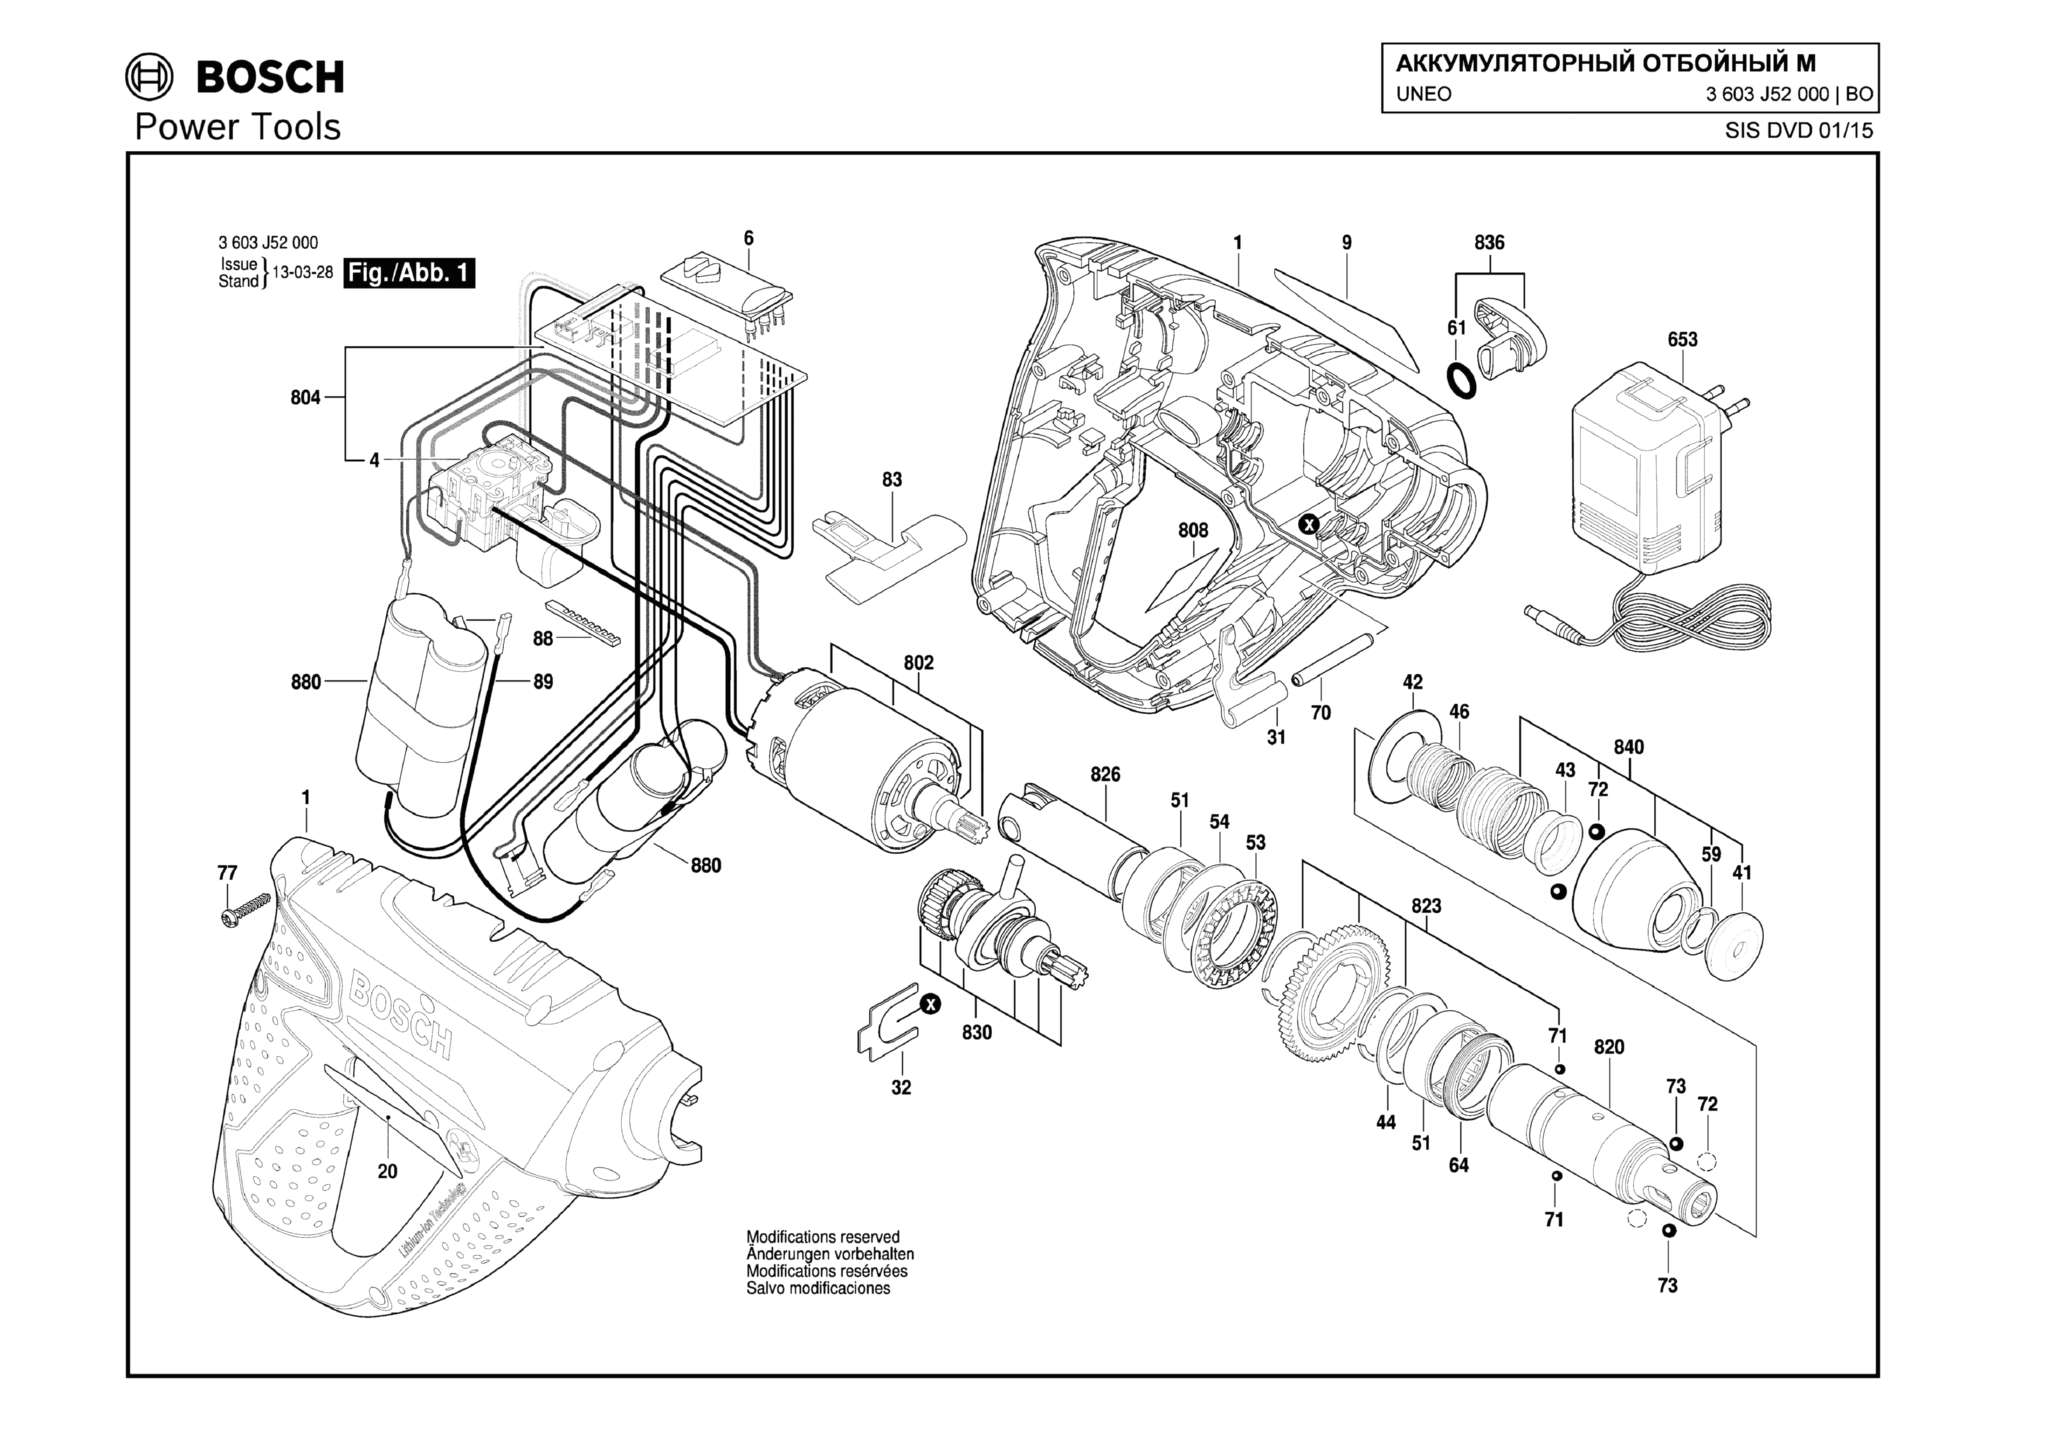 Запчасти, схема и деталировка Bosch UNEO (ТИП 3603J52000)